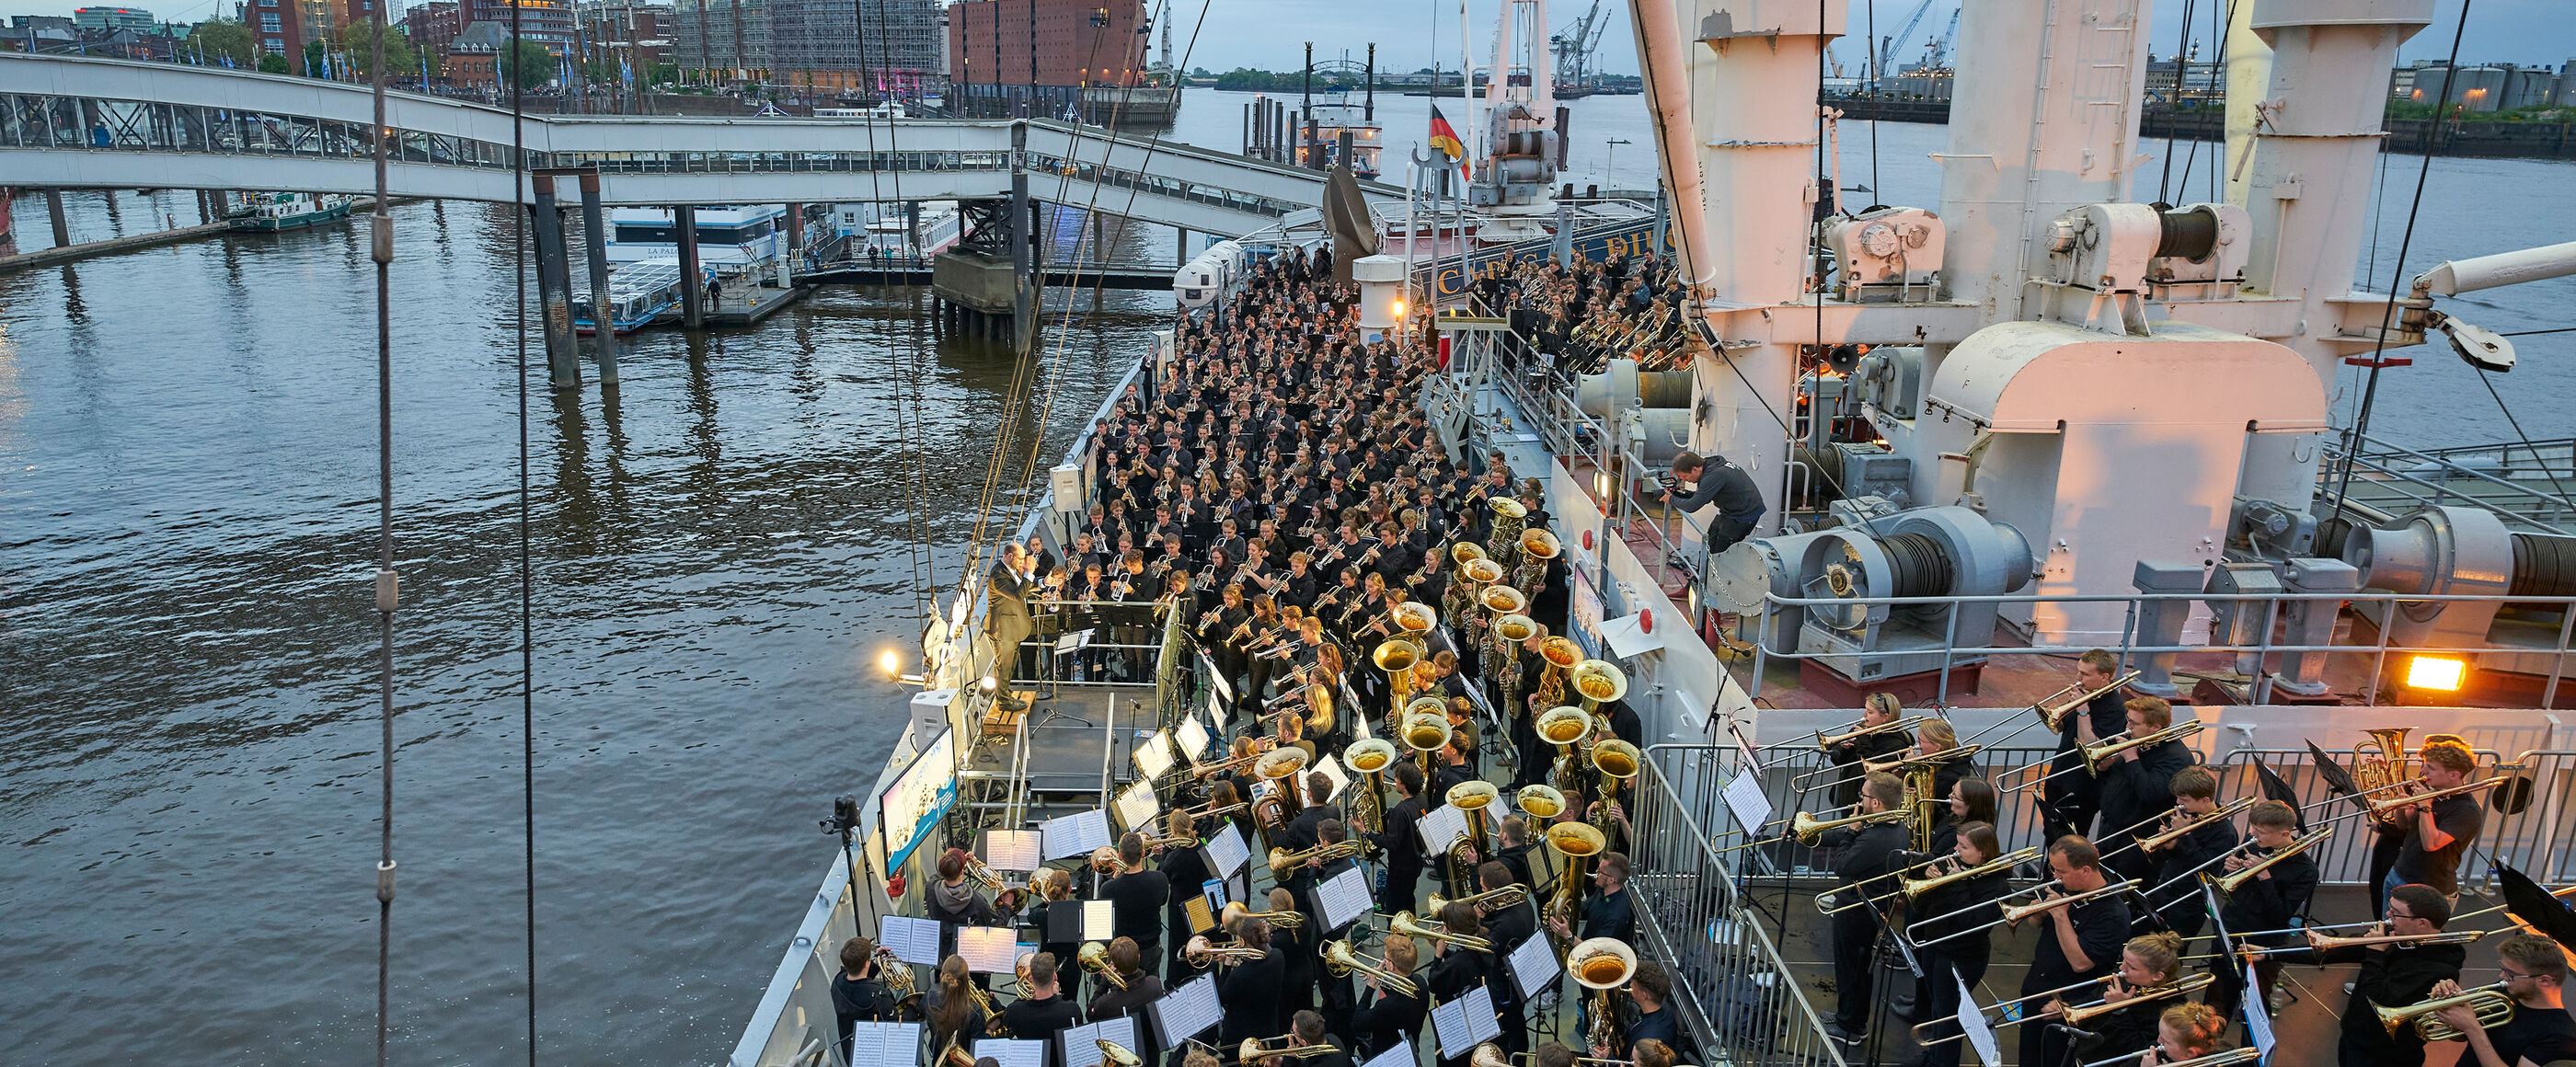 Ein riesige Blasensemble spielt auf einem Schiff, im Hintergrund ist die Hamburger Elbphilharmonie zu sehen.